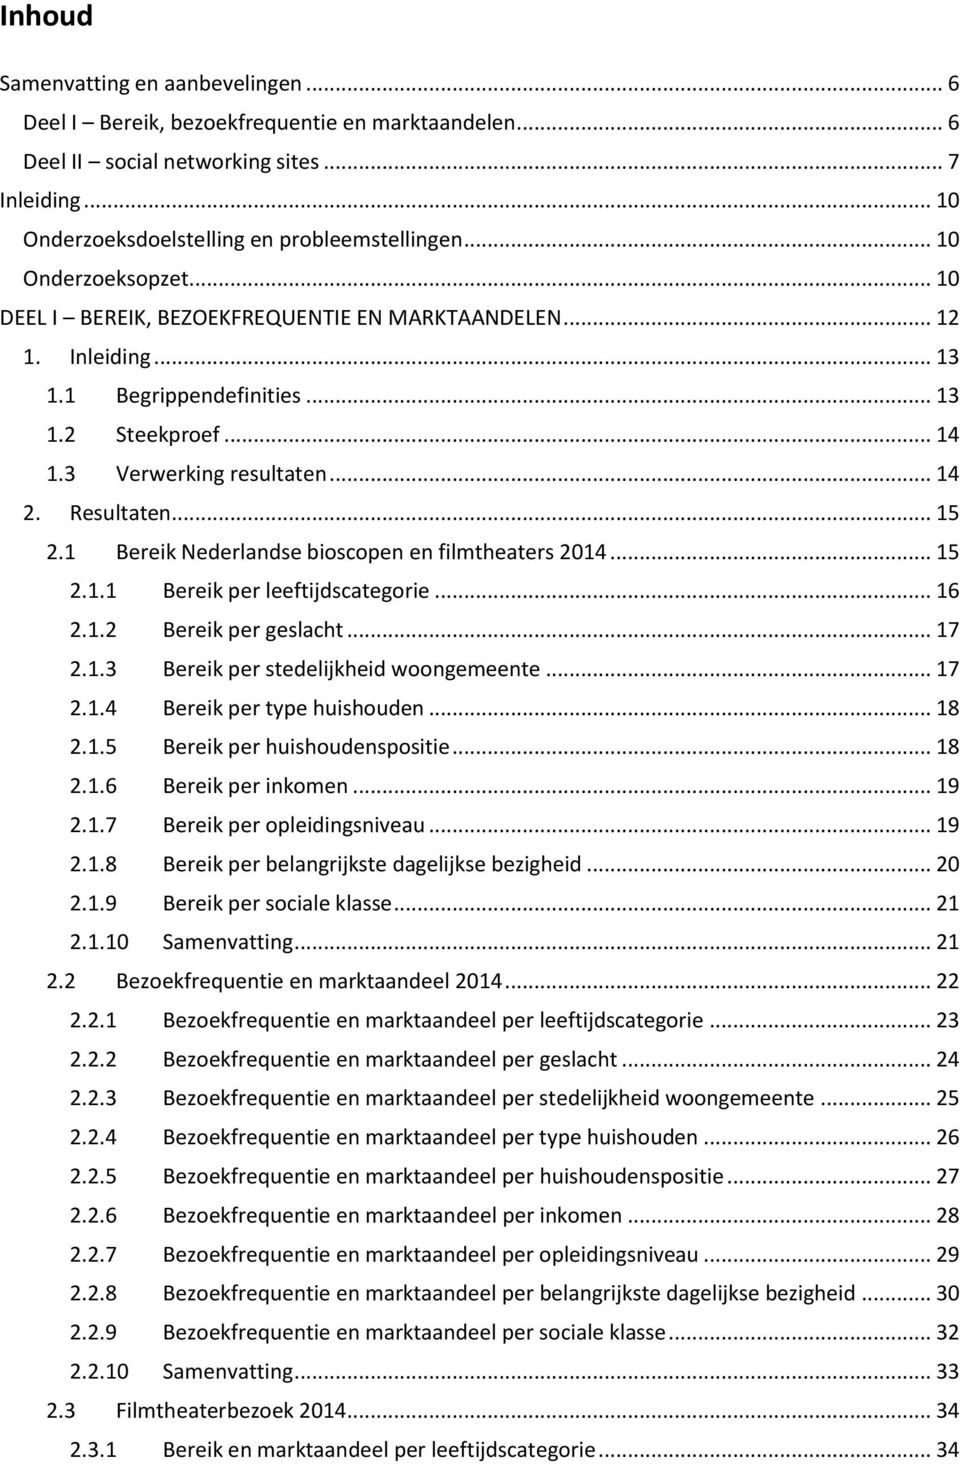 .. 15 2.1 Bereik Nederlandse bioscopen en filmtheaters 2014... 15 2.1.1 Bereik per leeftijdscategorie... 16 2.1.2 Bereik per geslacht... 17 2.1.3 Bereik per stedelijkheid woongemeente... 17 2.1.4 Bereik per type huishouden.